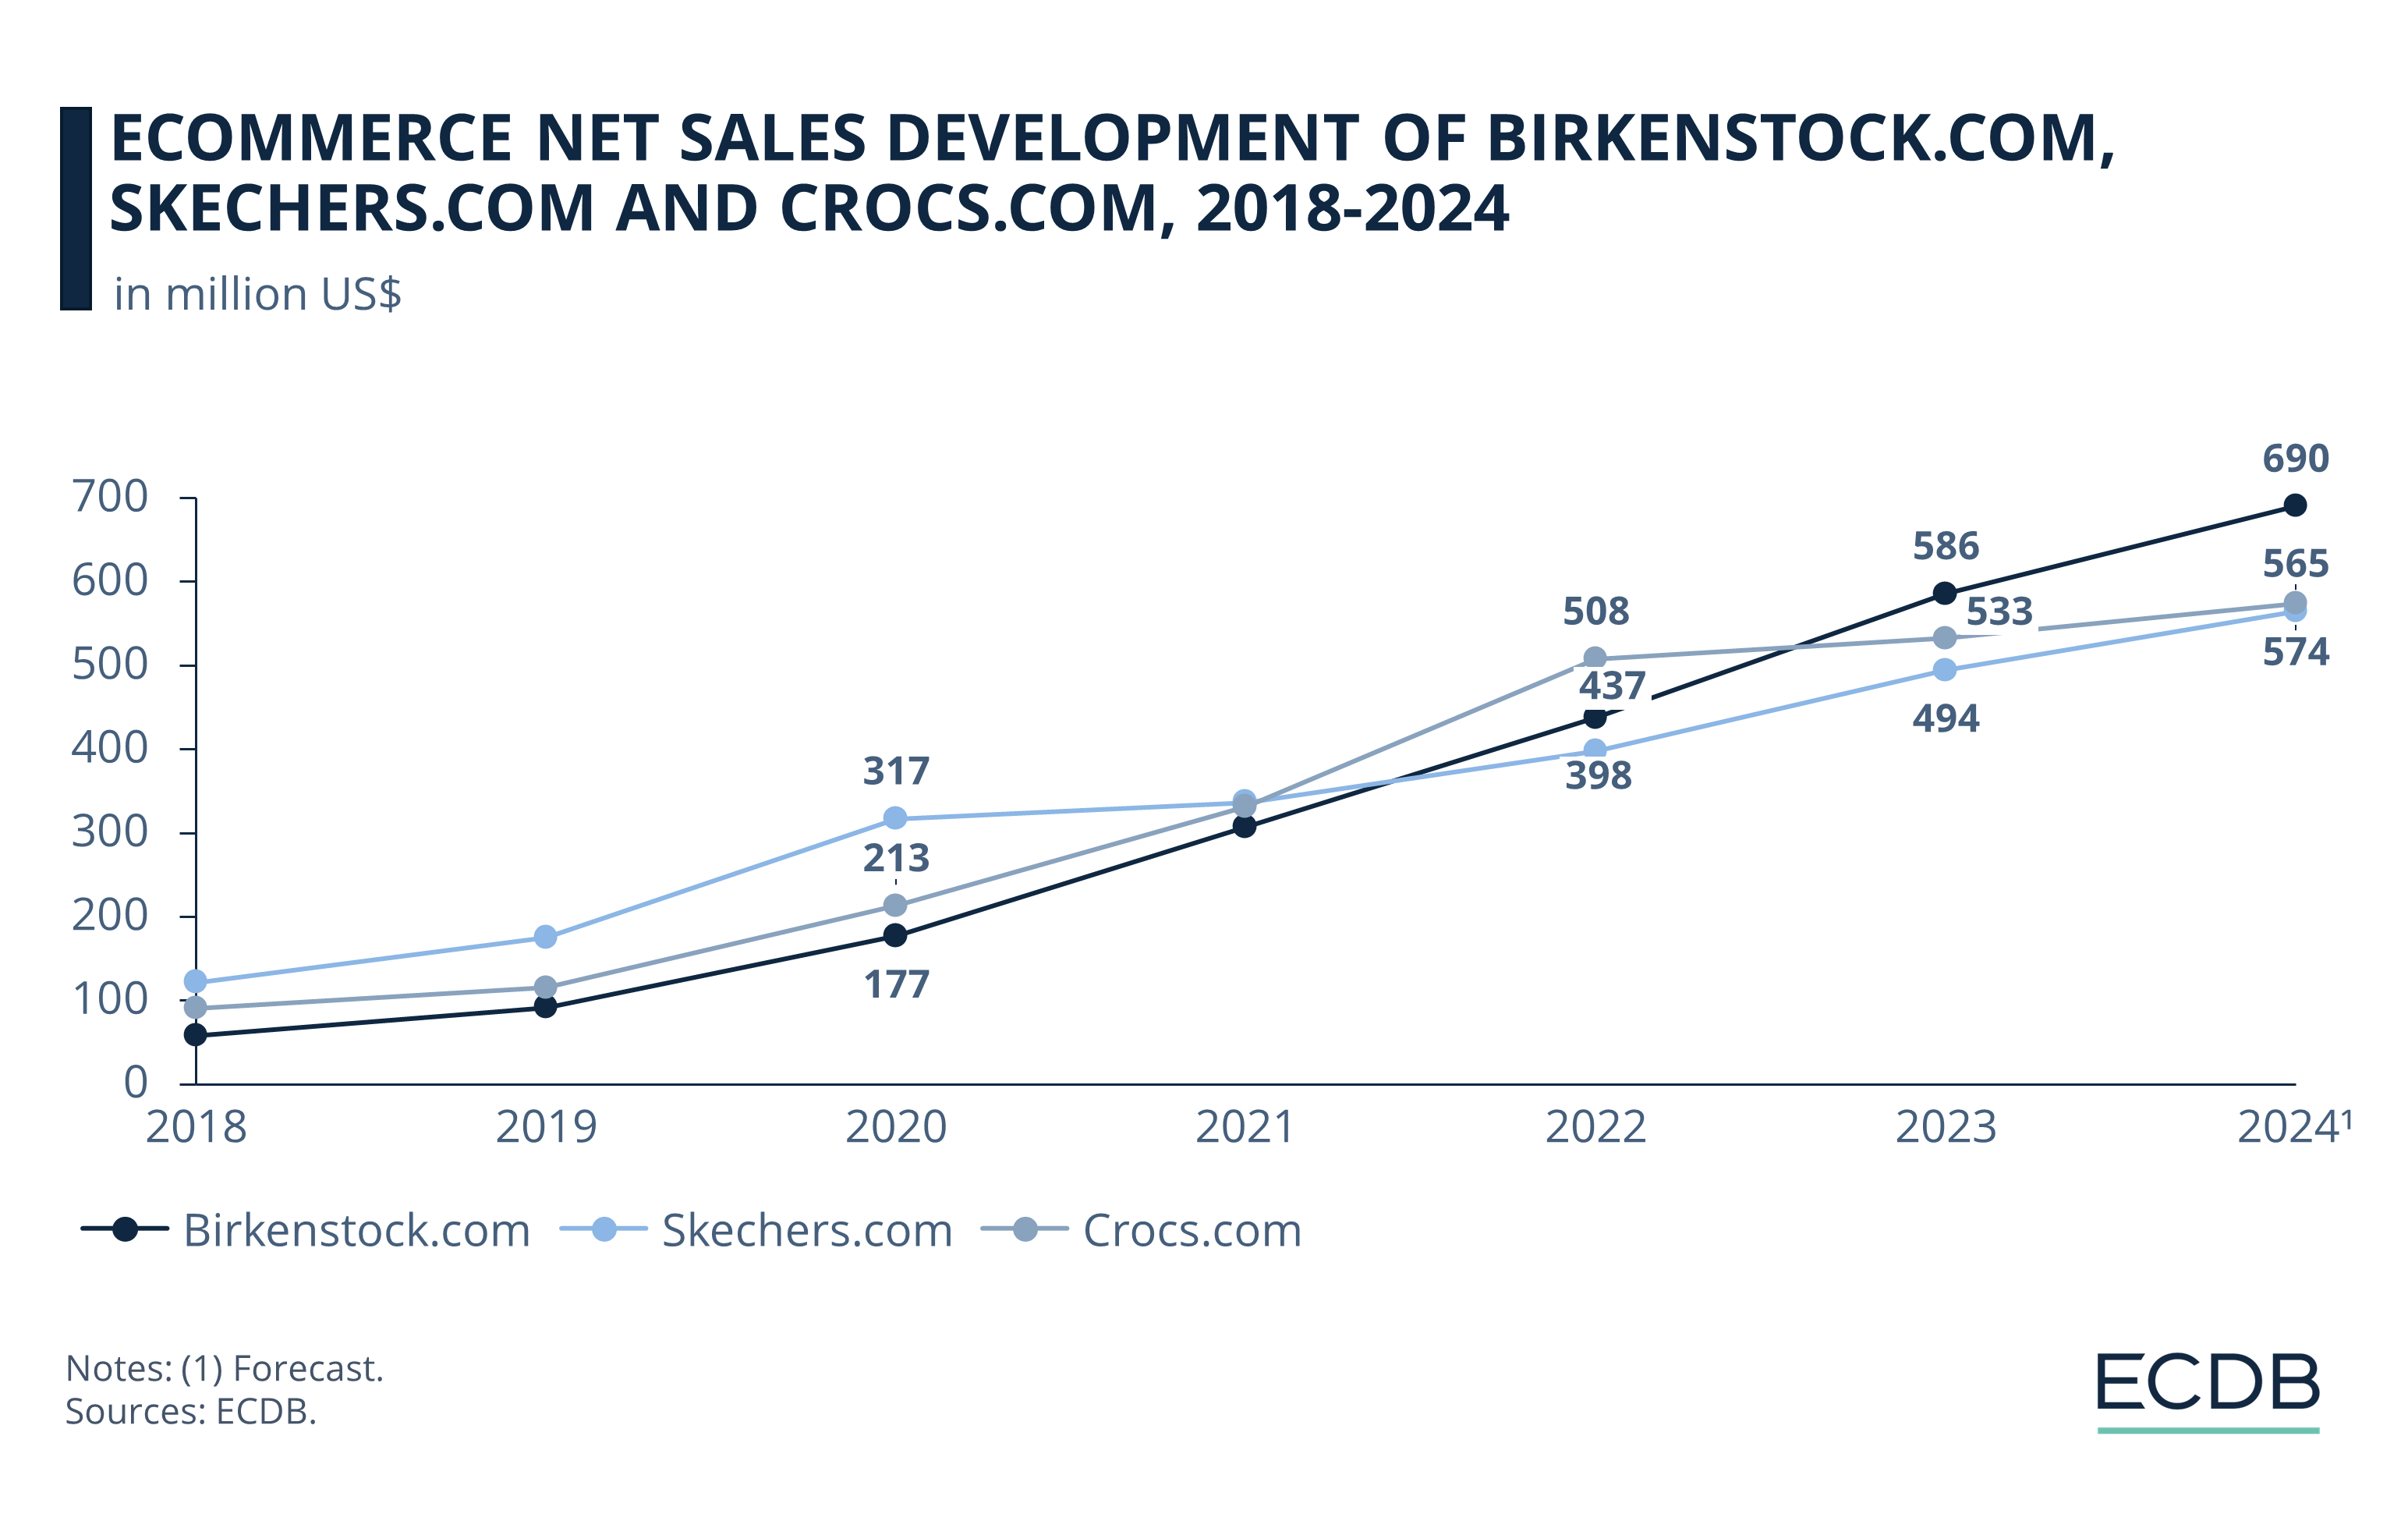 eCommerce Net Sales Development of Birkenstock.com, Skechers.com and Crocs.com, 2018-2024